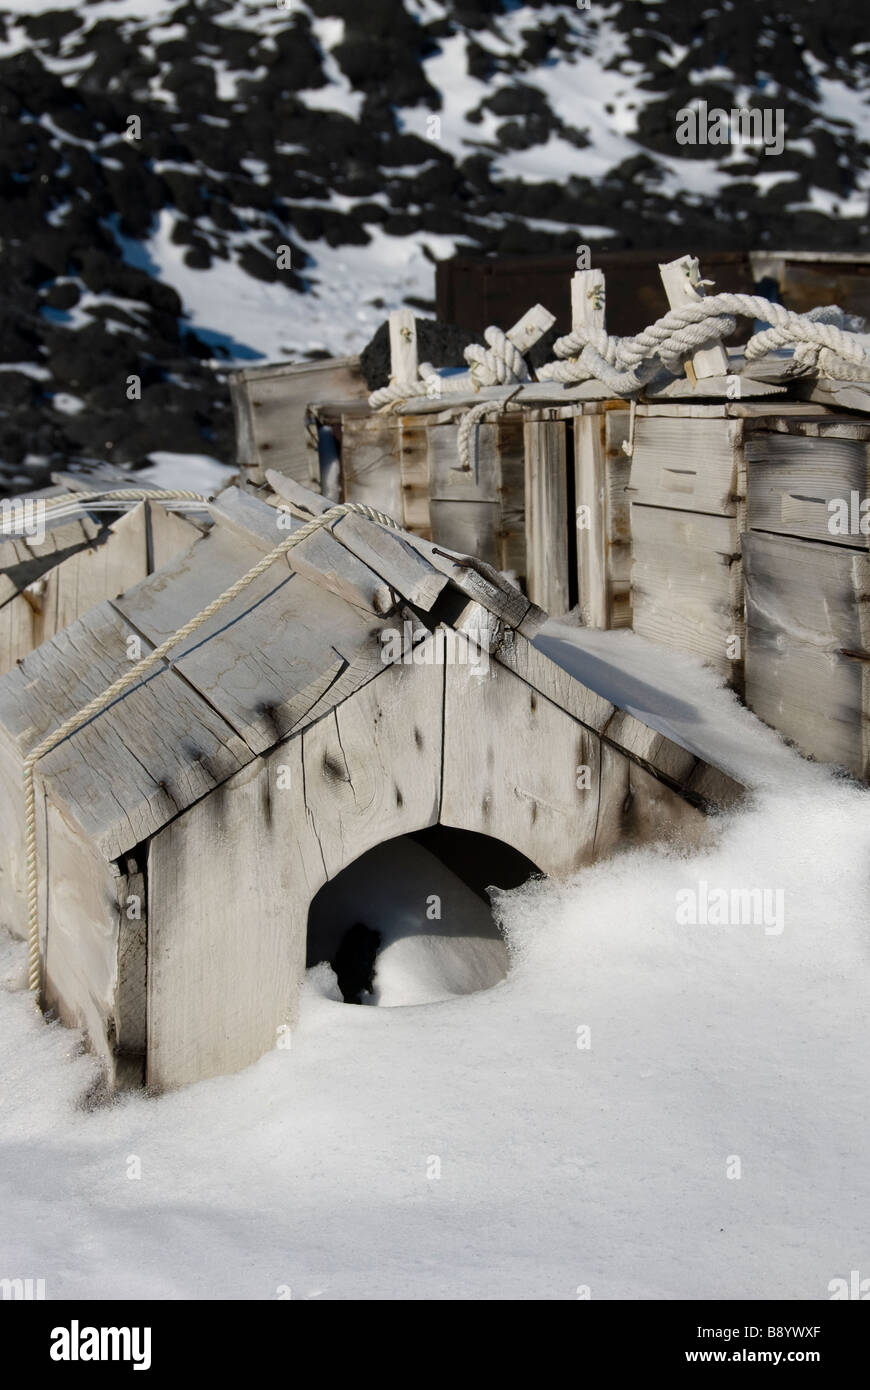 Hundehütten außerhalb Shackletons Nimrod Expedition Hütte, Kap Royds Rossmeer, Antarktis. Stockfoto